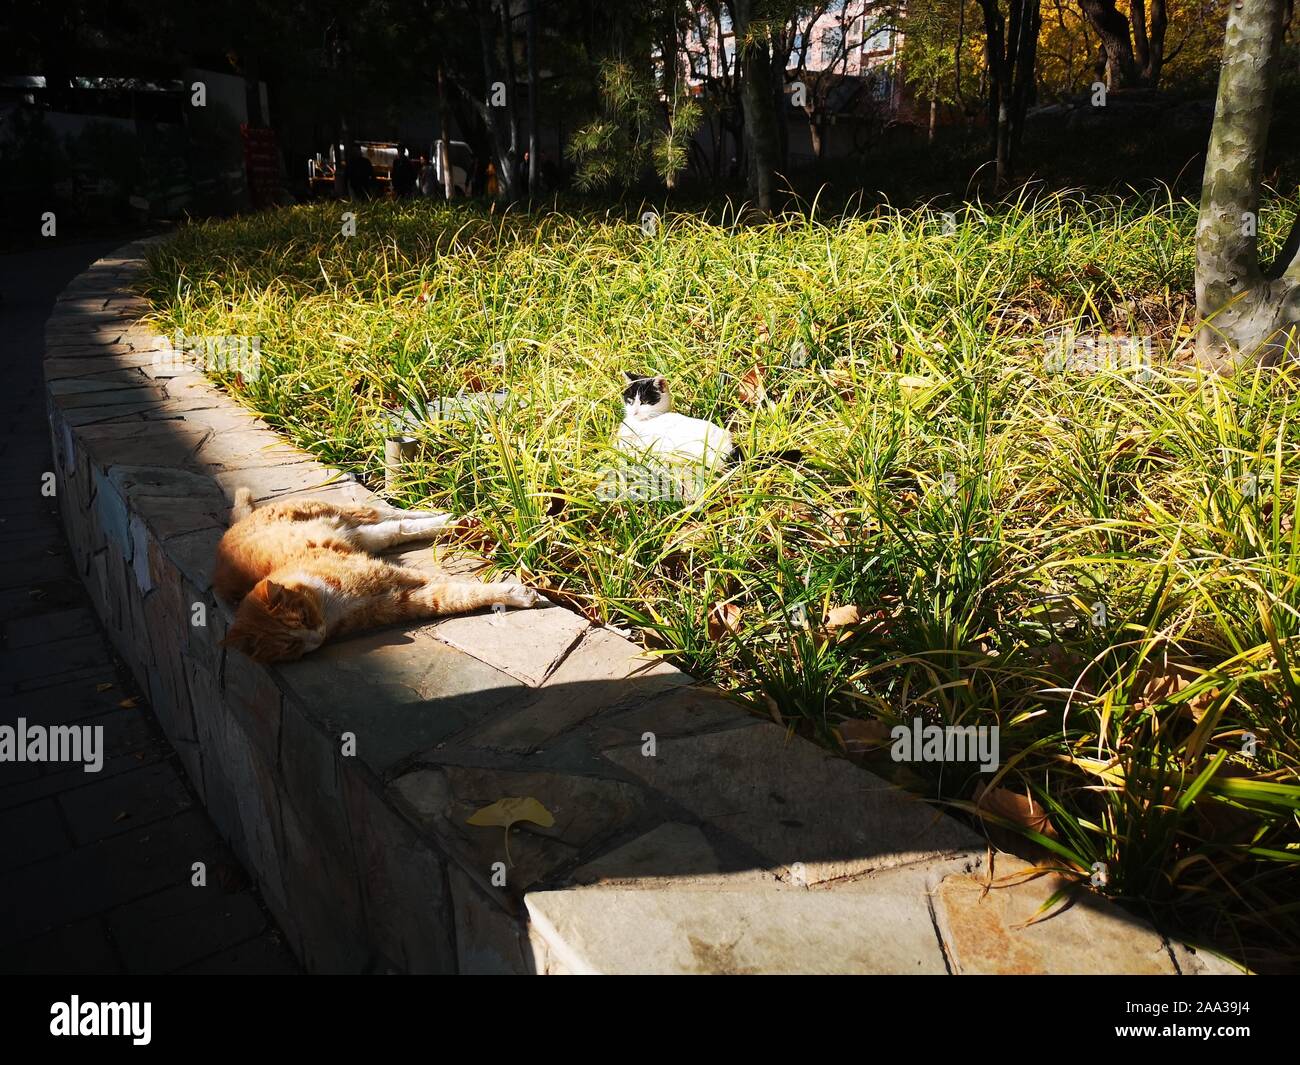 (191119) -- PECHINO, nov. 19, 2019 (Xinhua) -- Mobile mostra fotografica di gatti in giardino Xuanwuyiyuan a Pechino Capitale della Cina, nov. 11, 2019. (Xinhua/Guan Guifeng) Foto Stock